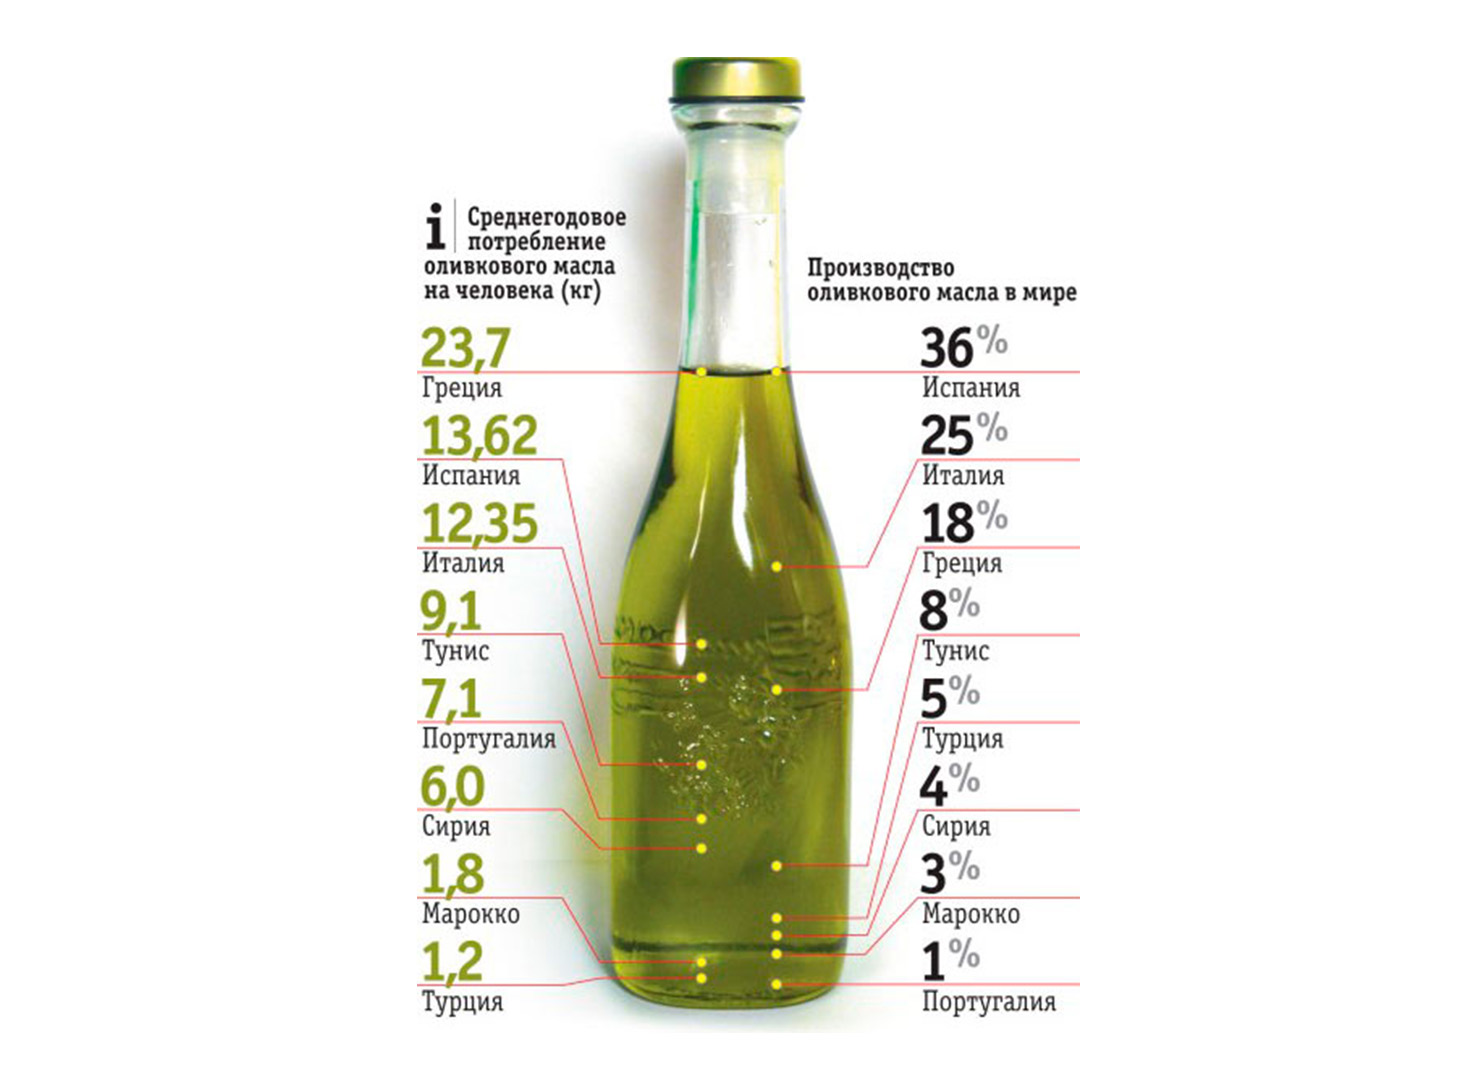 Сколько масла в бутылке. Маркировка оливкового масла. Оливковое масло состав витаминов. Оливковое масло инфографика. Оливковое масло что содержит.